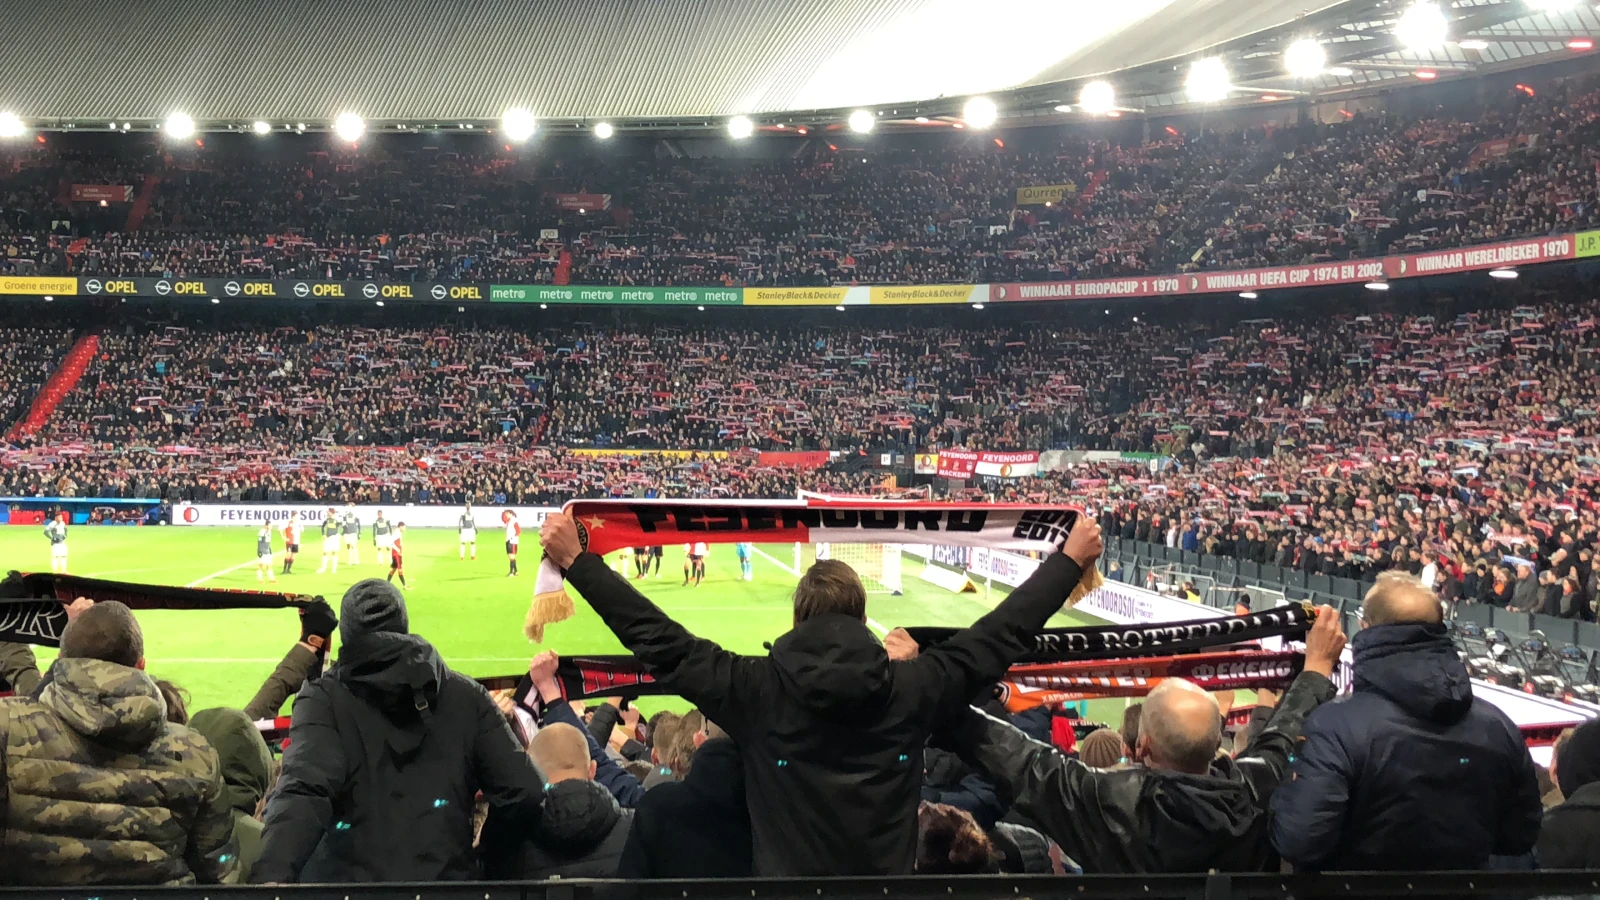 'Feyenoord overweegt om netten te laten staan voor Klassieker'